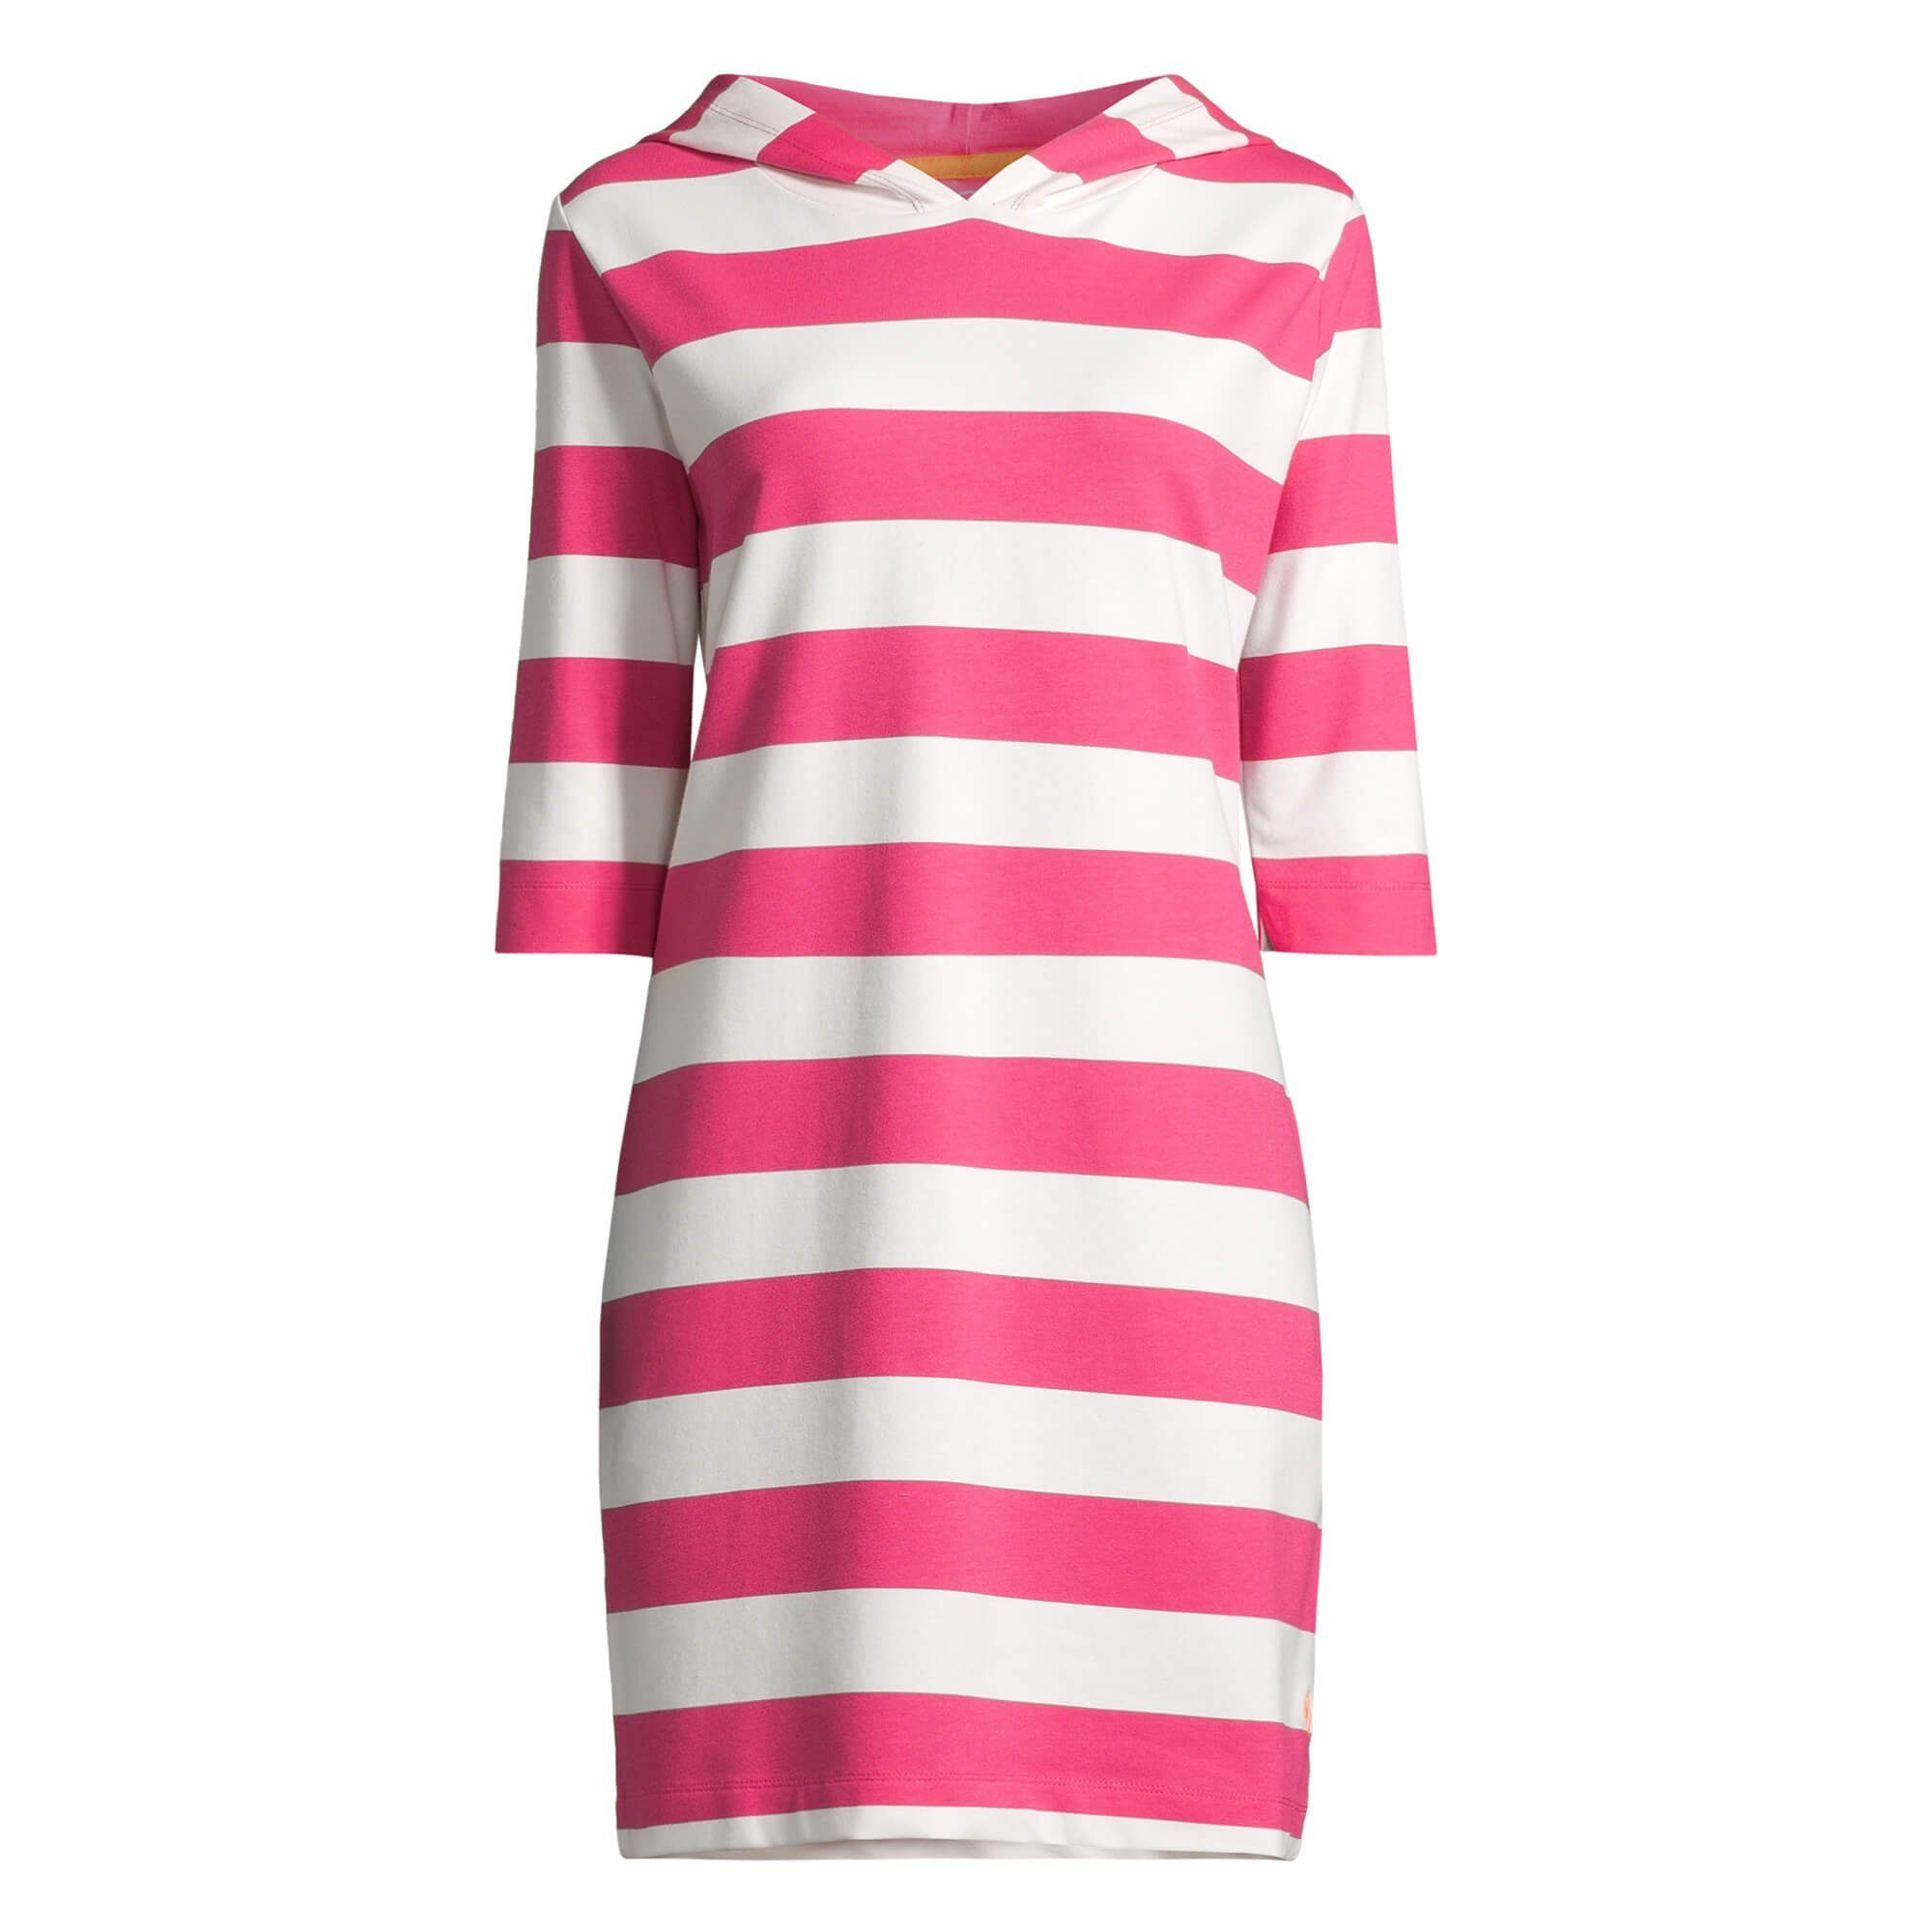 salzhaut Shirtkleid Damen Kapuzenkleid Hoodie-Kleid 3/4-Arm offwhite pink Block-Streifen / Löövstick